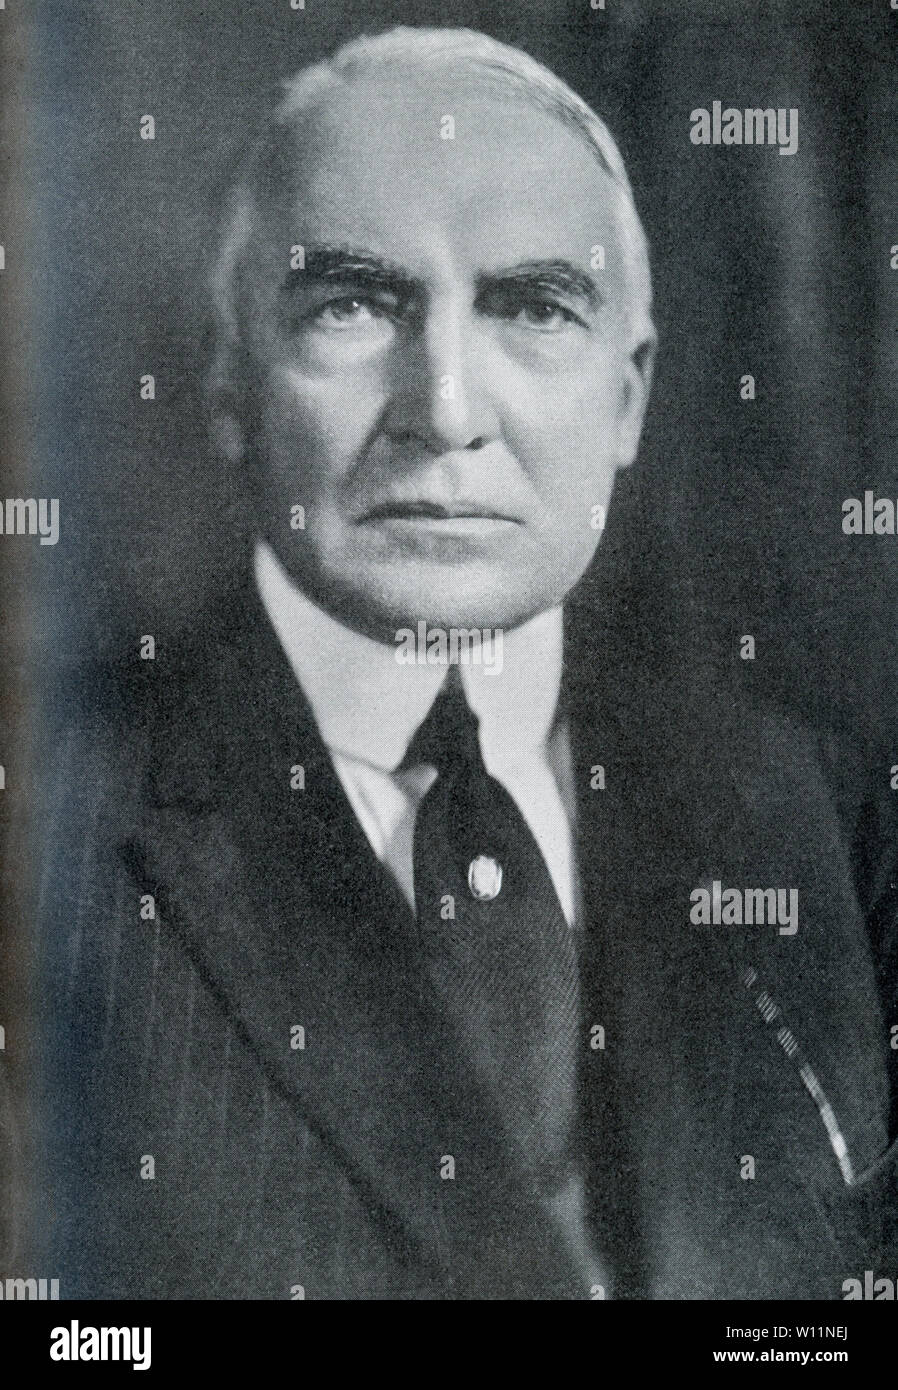 Esta foto data de 1920 y muestra el 29º Presidente de los Estados Unidos, Warren Gamaliel Harding, quien sirvió como presidente a partir de 1921-1923. Foto de stock